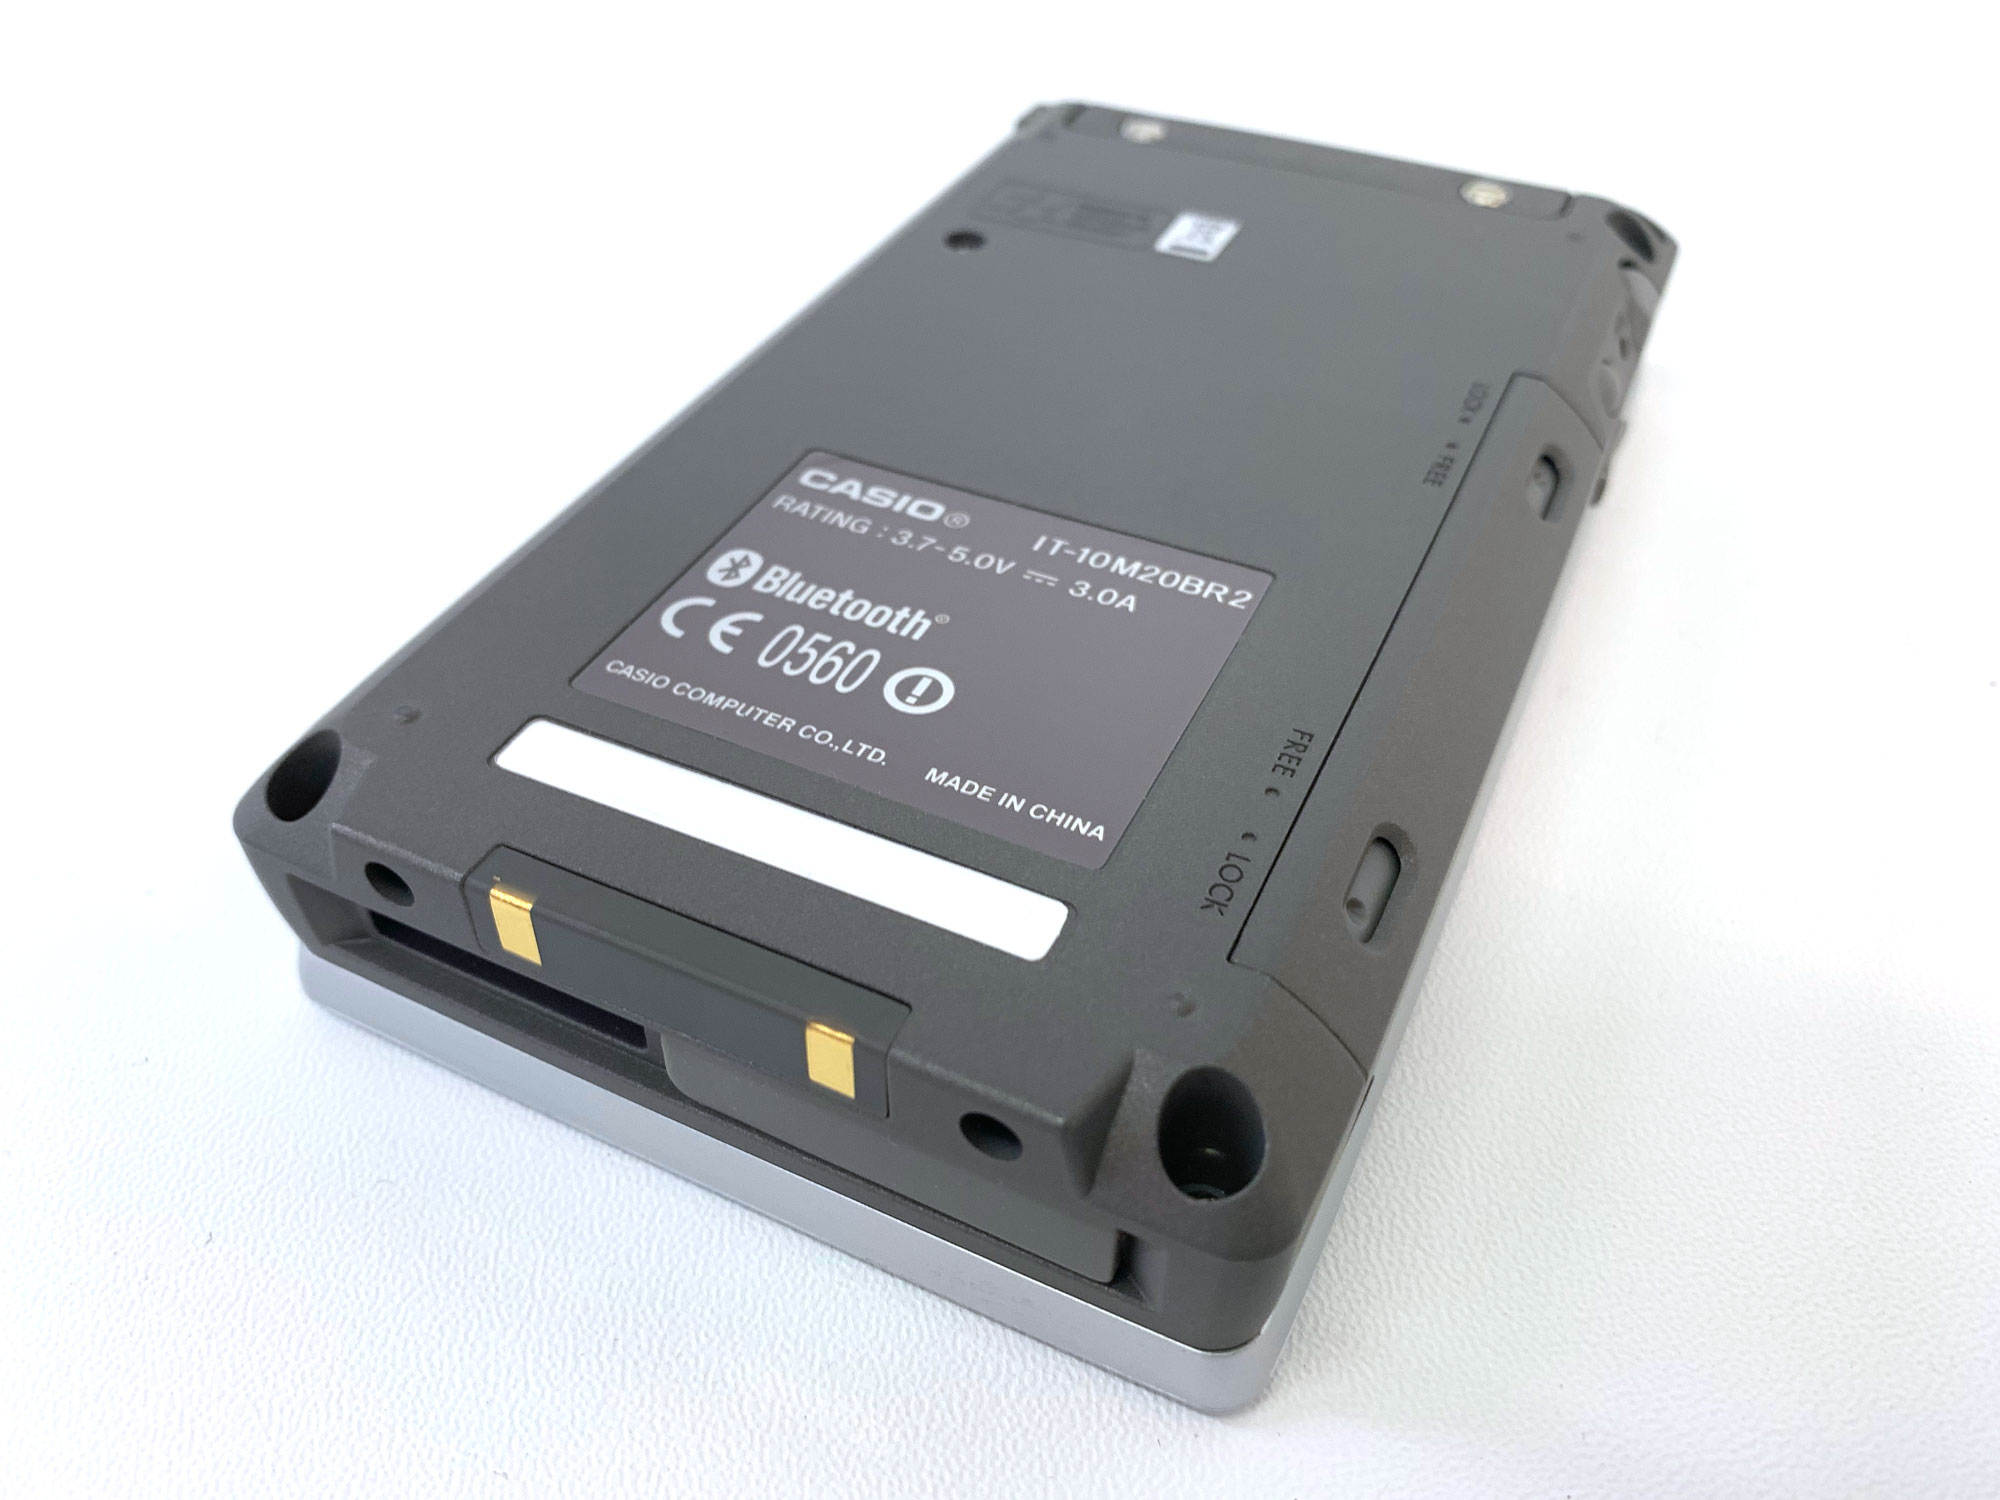 IT-10 - Pocket PC mit transreflektivem 3.7-Zoll TFT Display